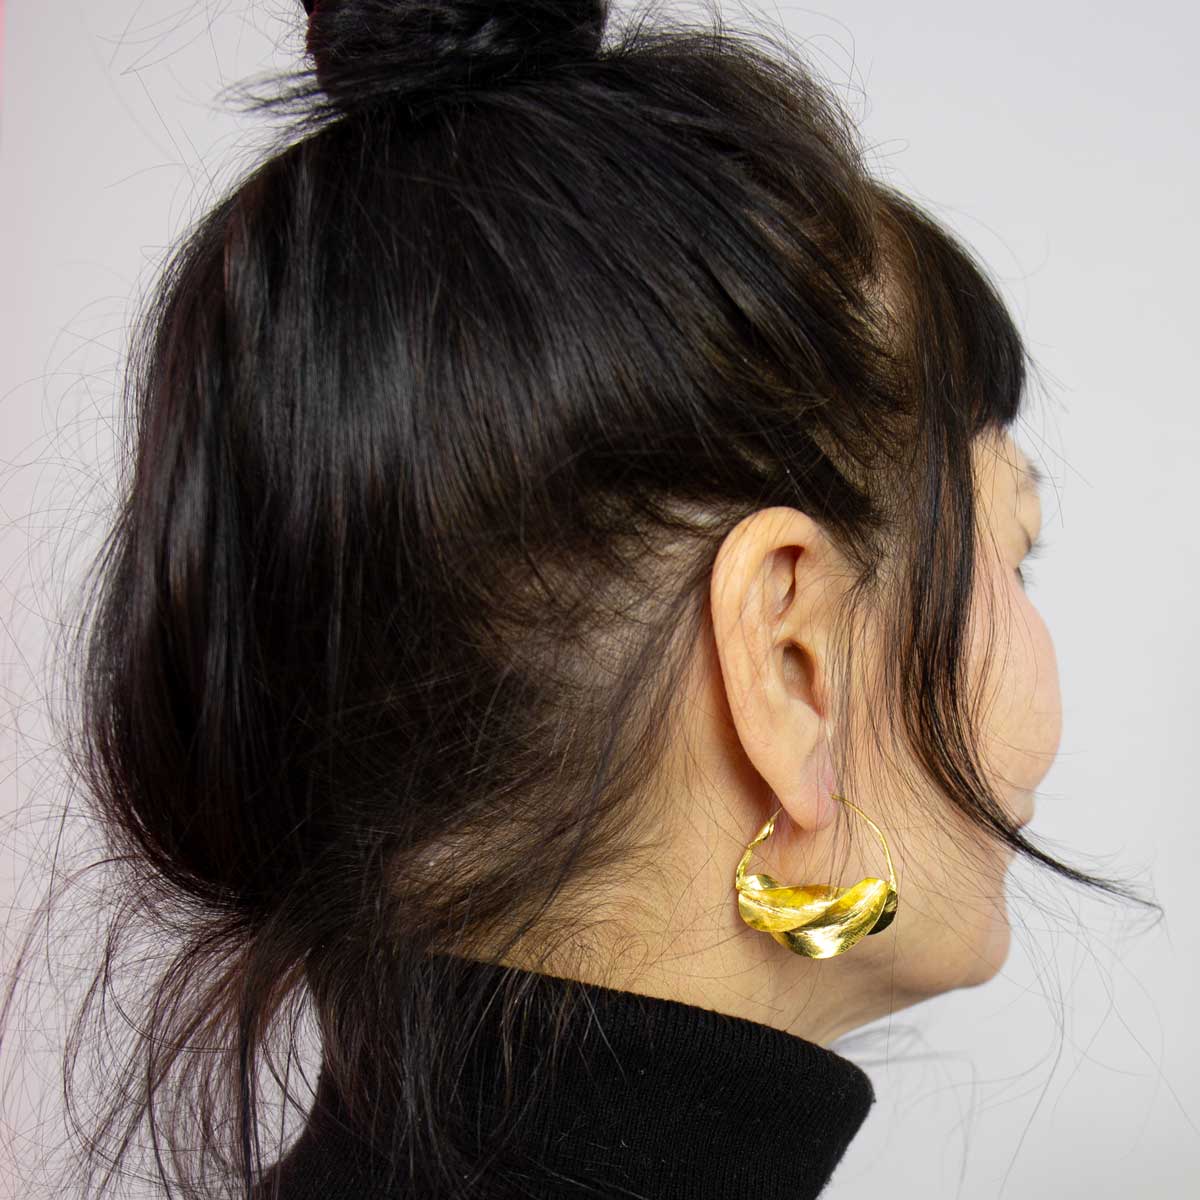 FULANI BRASS earrings, M